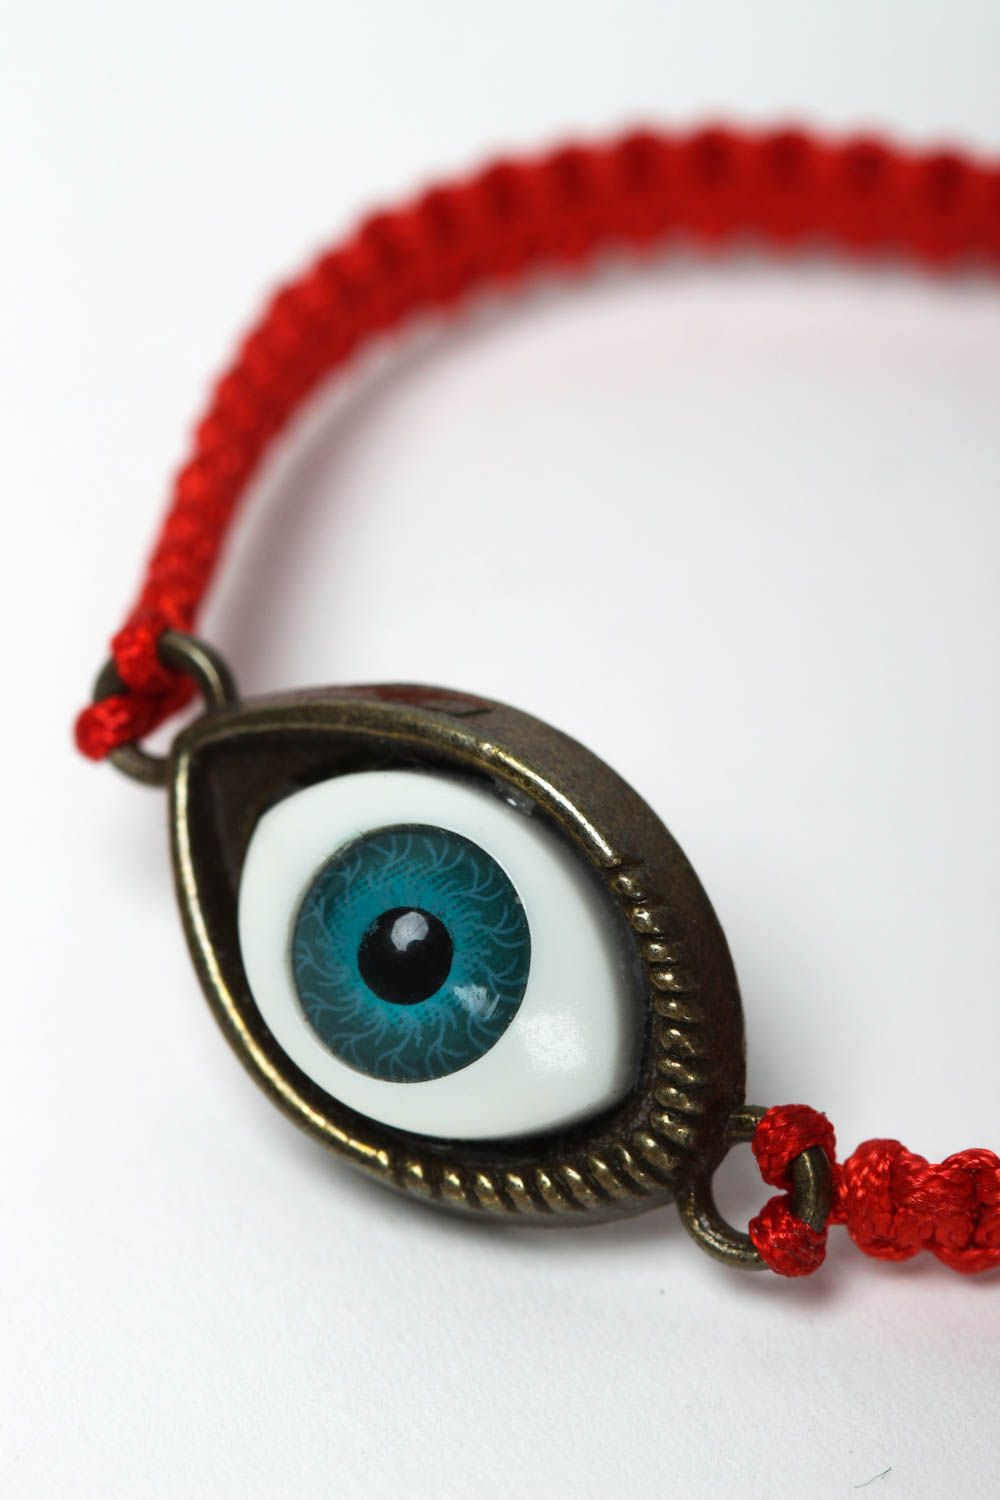 Плетеный браслет ручной работы с глазом браслет из ниток оберег модный браслет фото 3